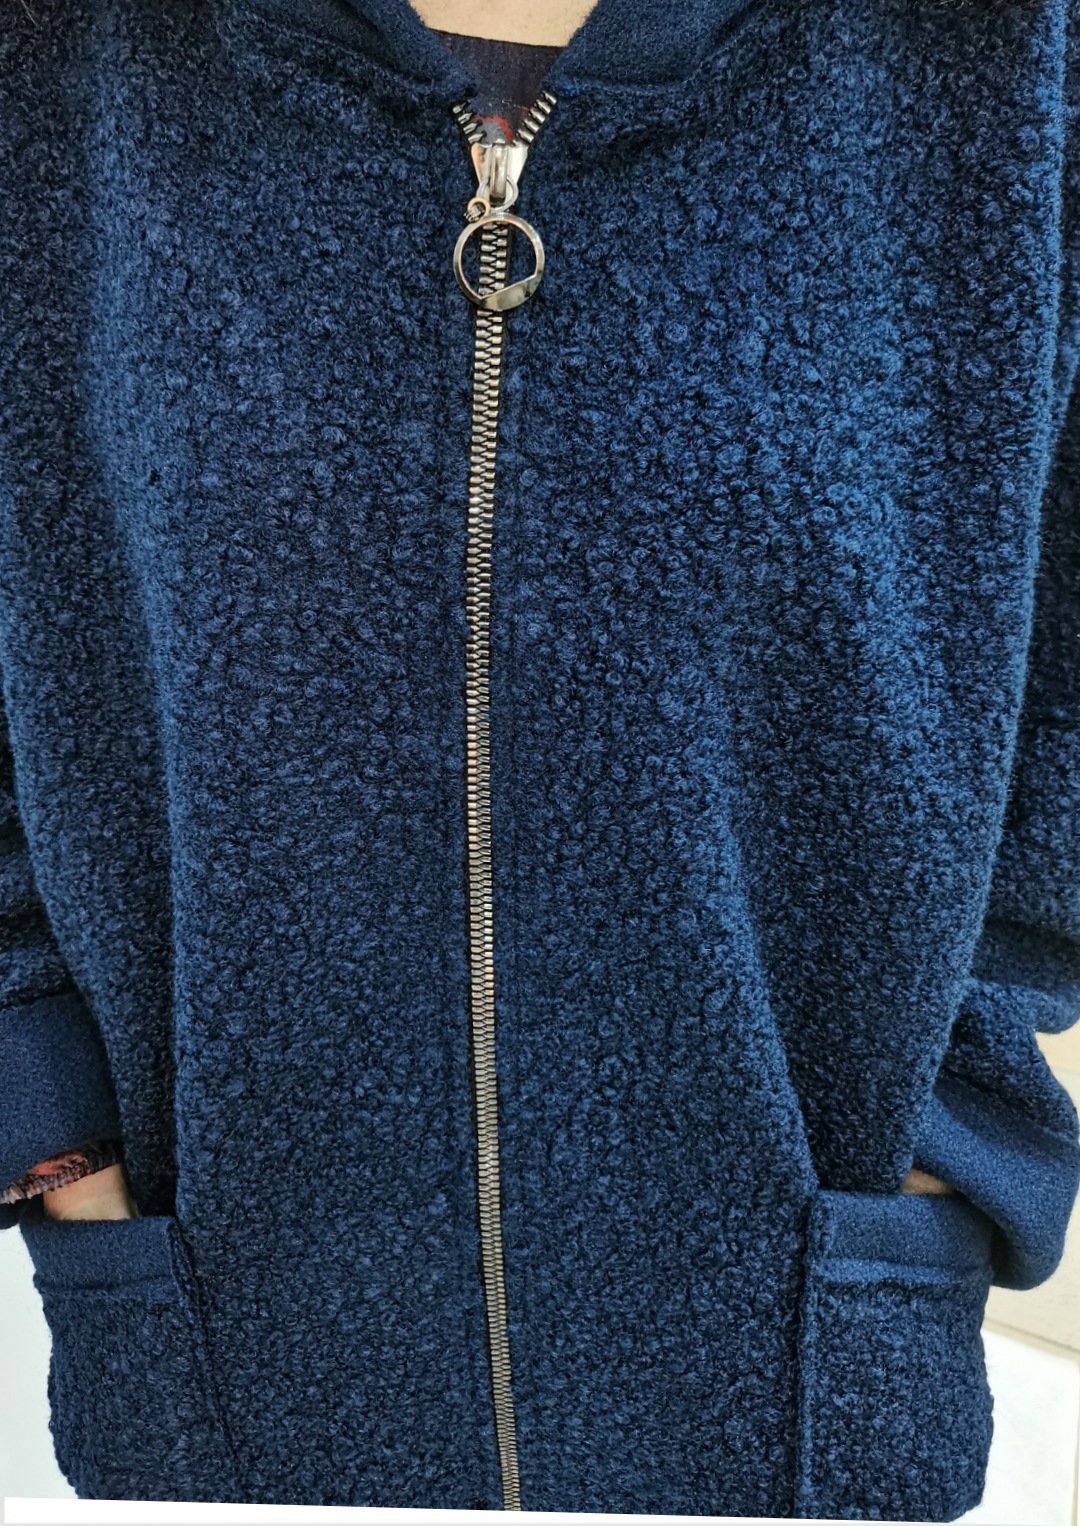 Пальто "Темно-синее" в интернет магазине